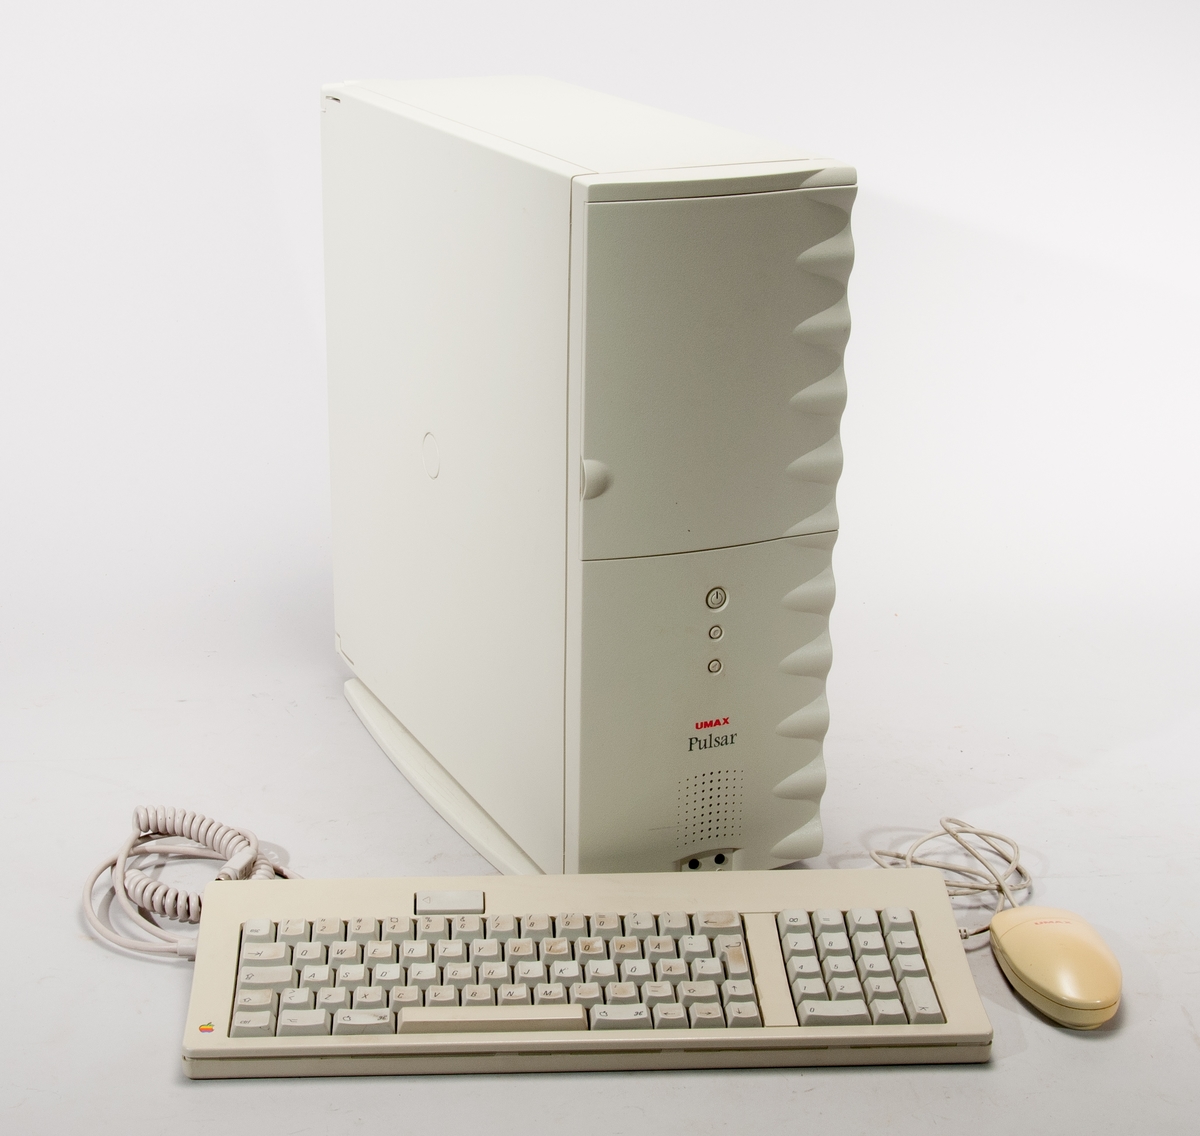 Dator, Macintosh-klon, towermodell, med extra hårddisk insatt. två minneskort i totalt 8 platser, ethernet, appletalk, apple tangentbordsbuss, scsi interface, 
Modellnamn H6D0
Tillverkningnsnr: 

På moderkortet: Umax computer corp, storm surge, 9010045-0007, s/n cy00175.B

tillverkad 1996

Med Apple-tangentbord och mus Umax One Button Mouse.